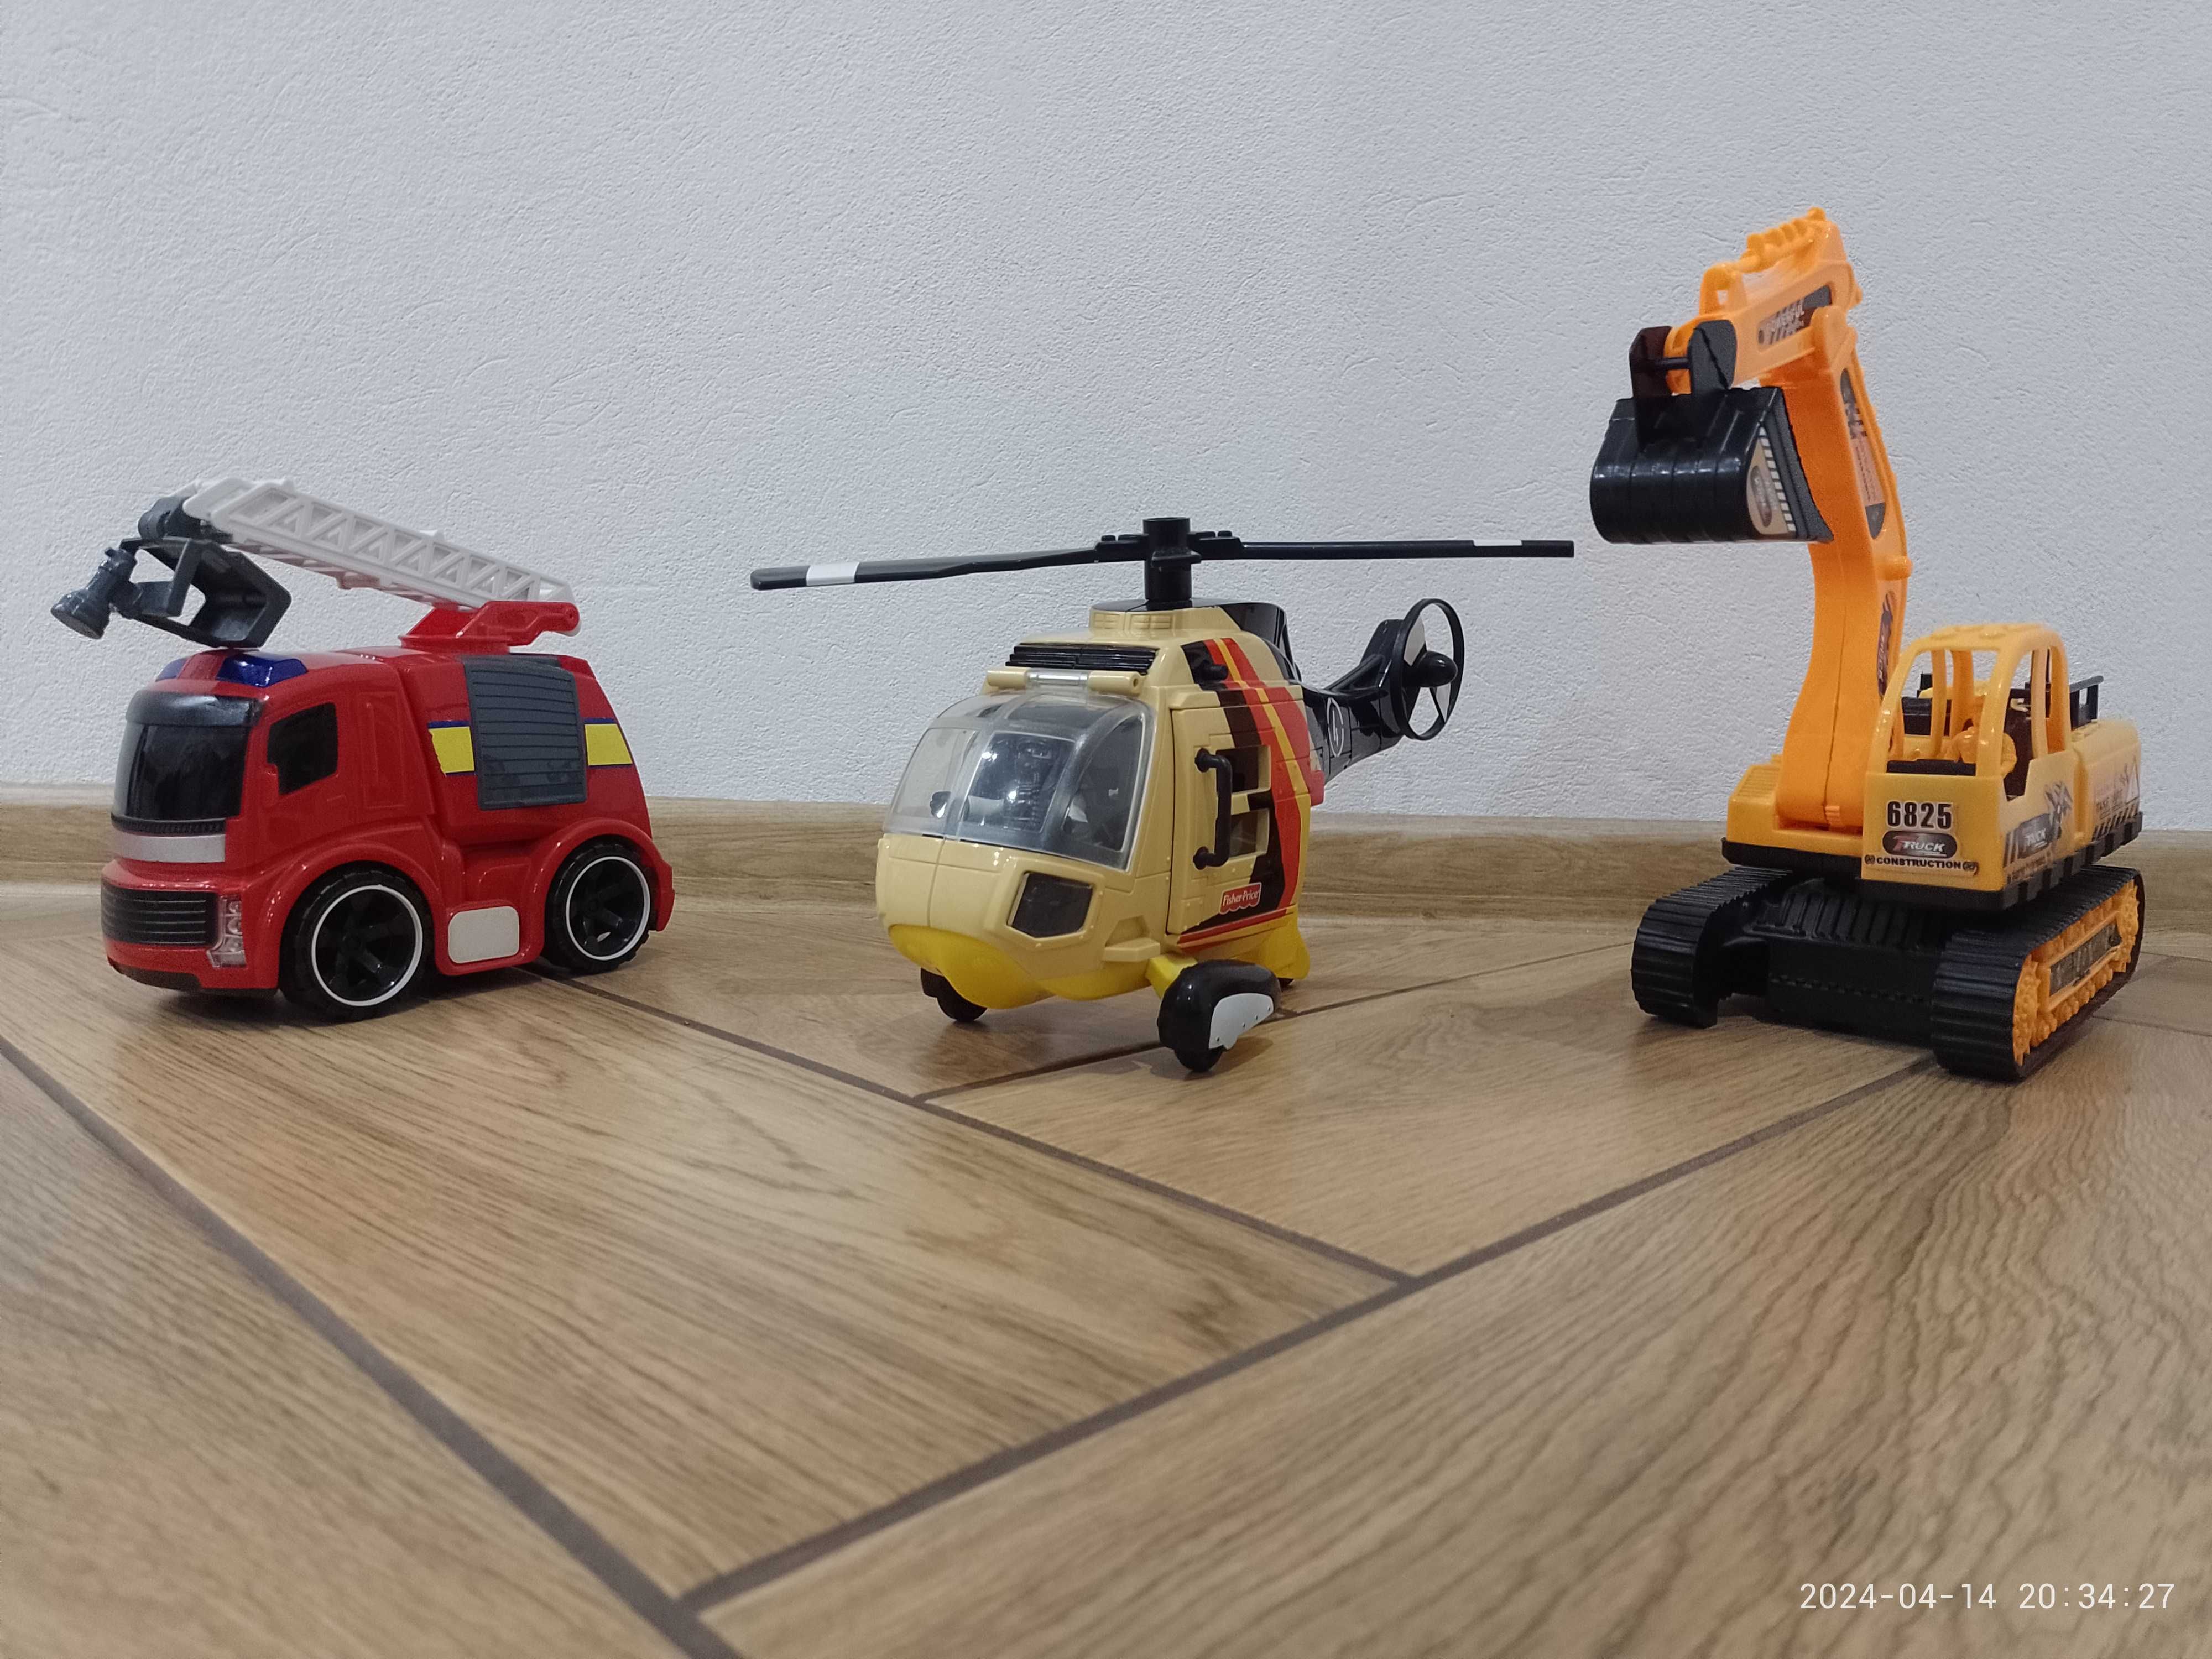 3 zabawki dla chłopca (straż pożarna, helikopter, koparka)